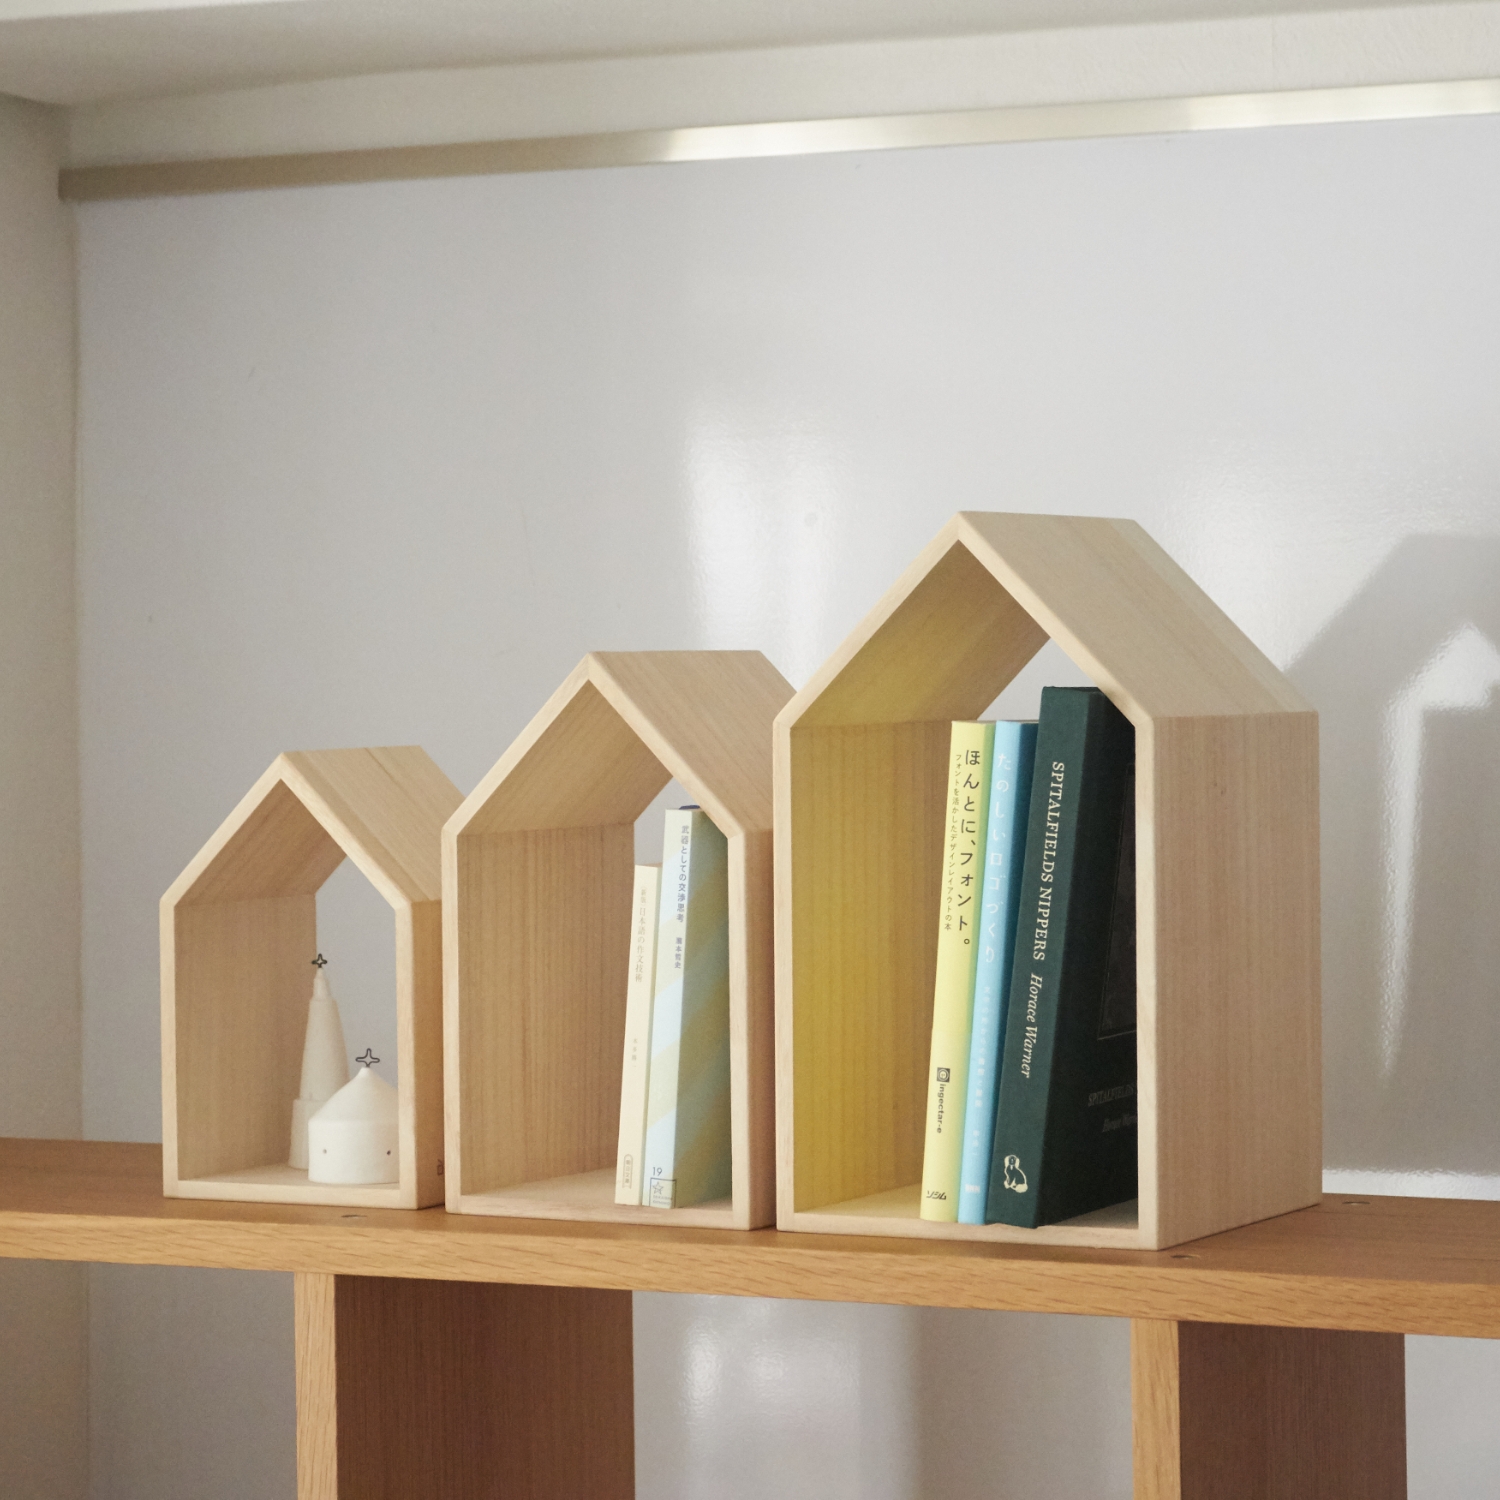 増田桐箱店/本の家 Book House Nest Mini